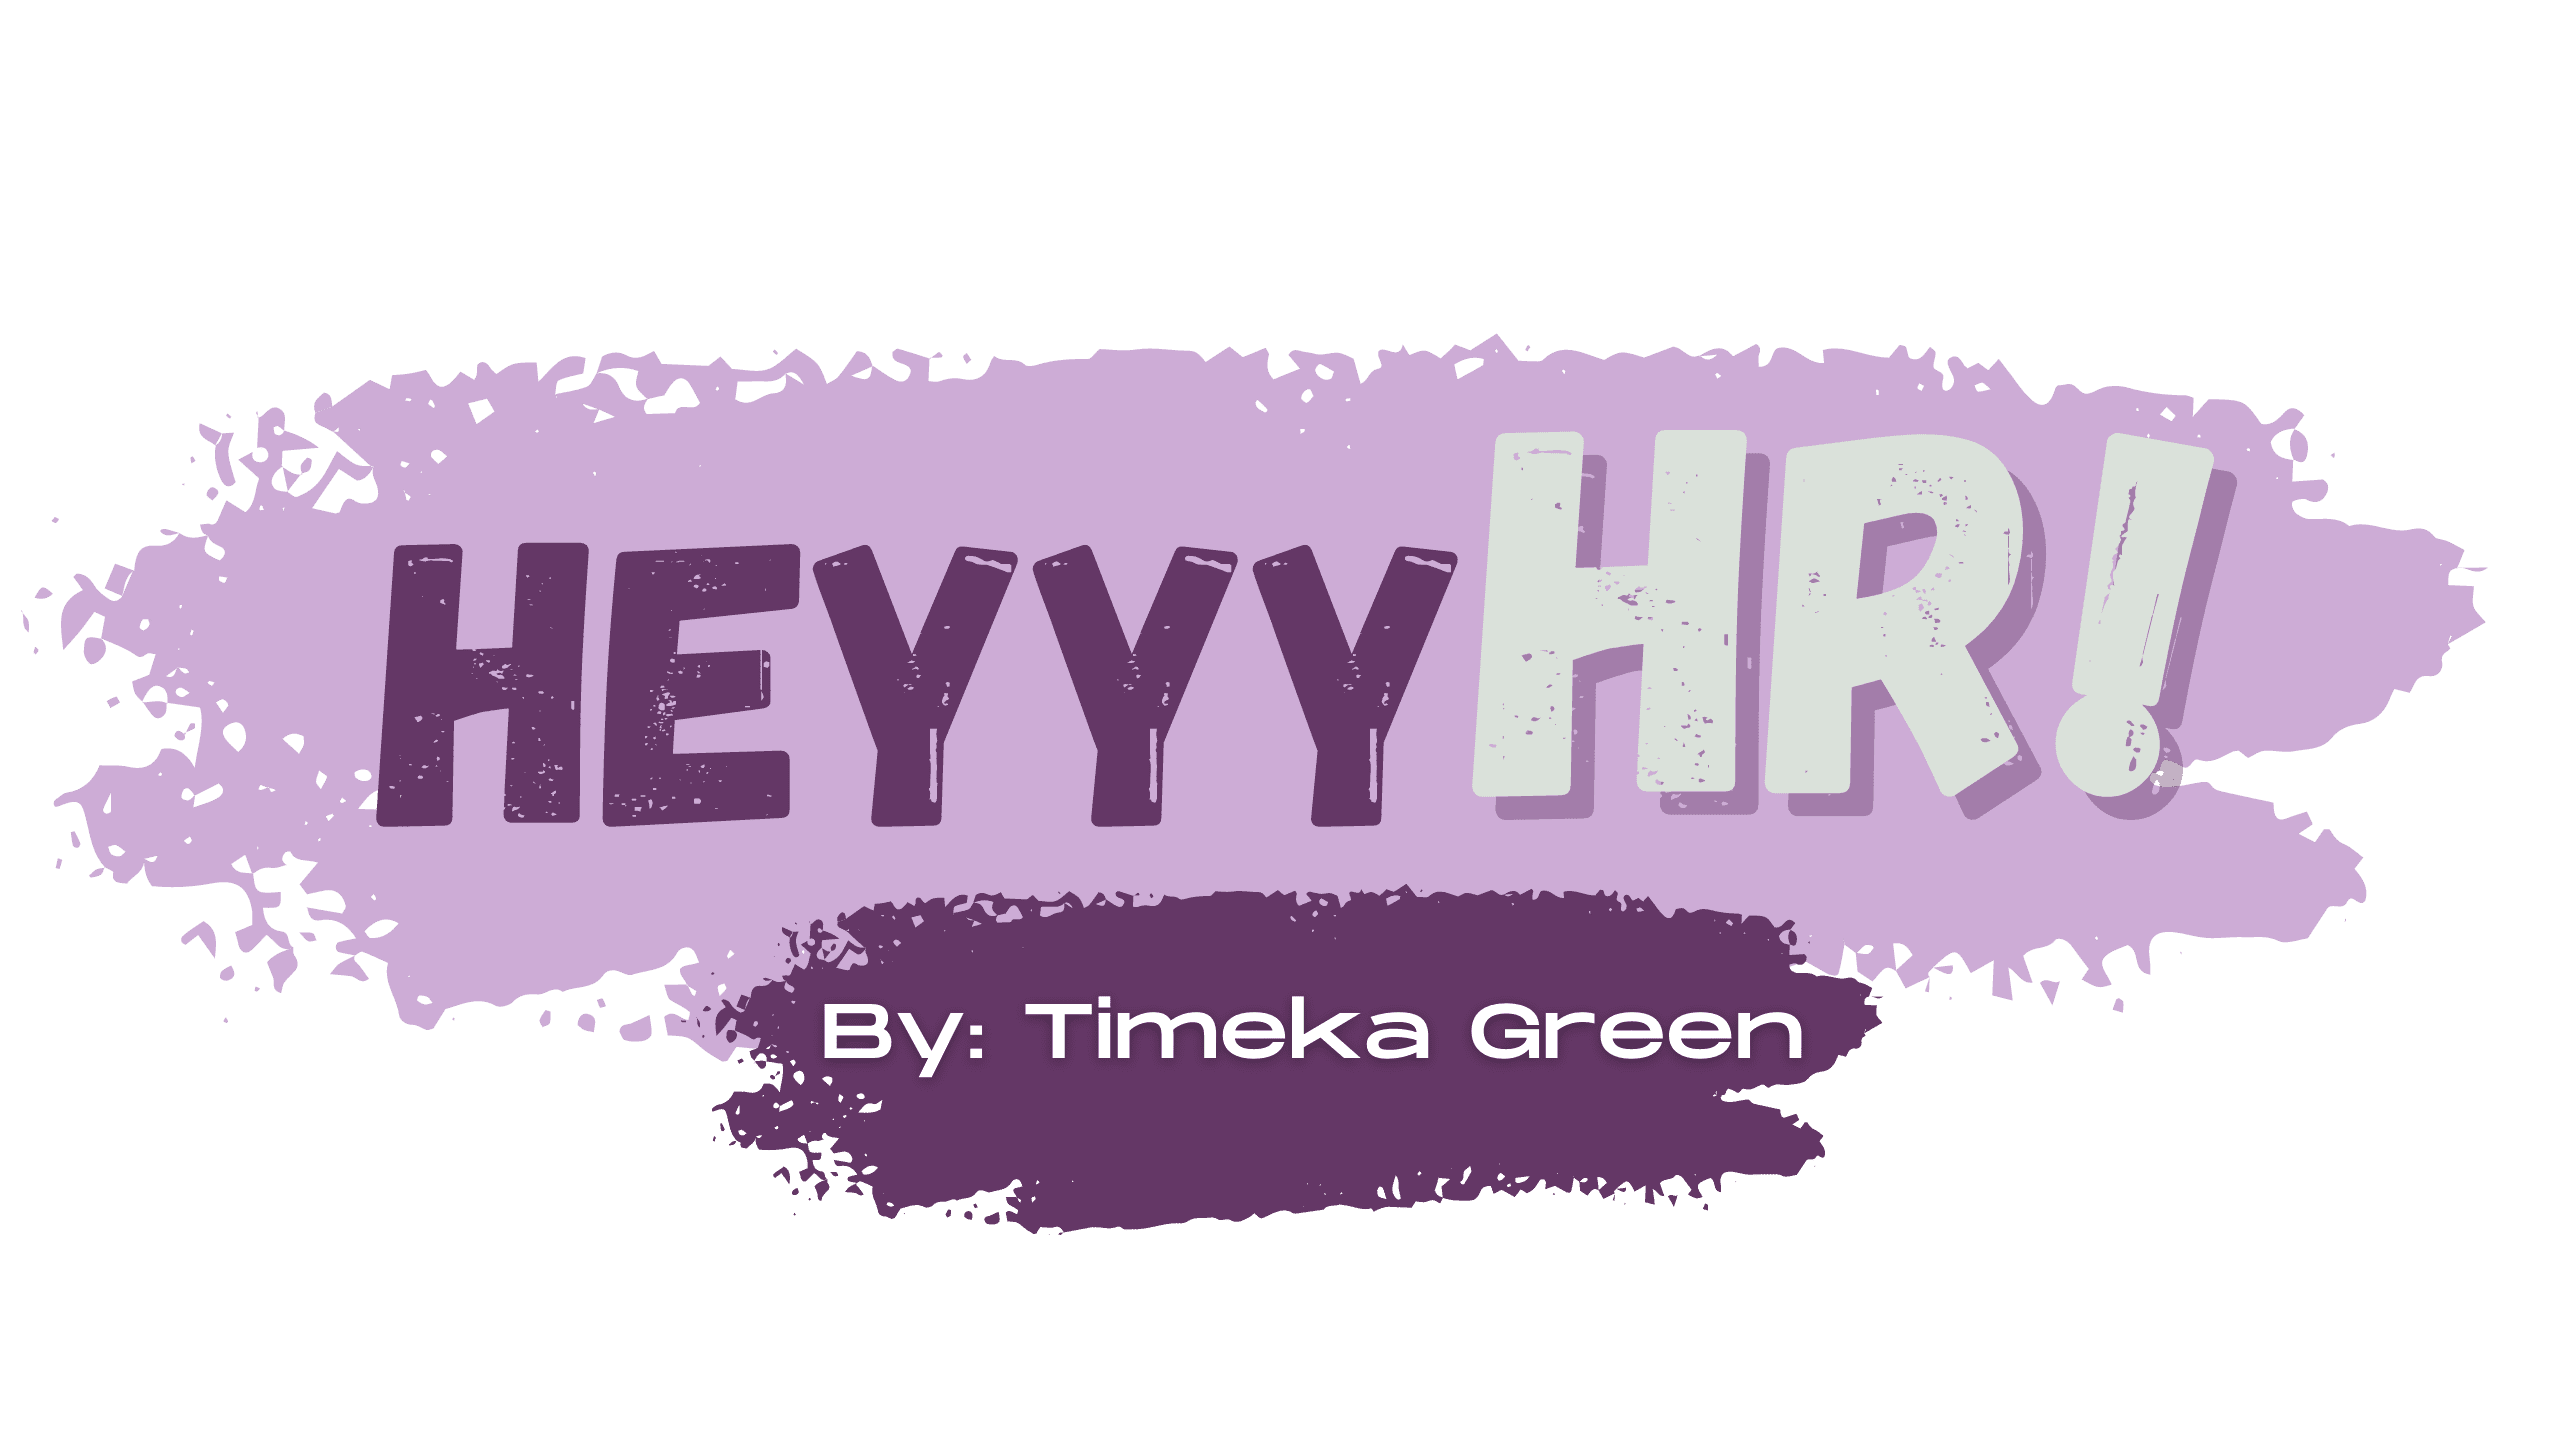 Heyyy HR! by Timeka Green